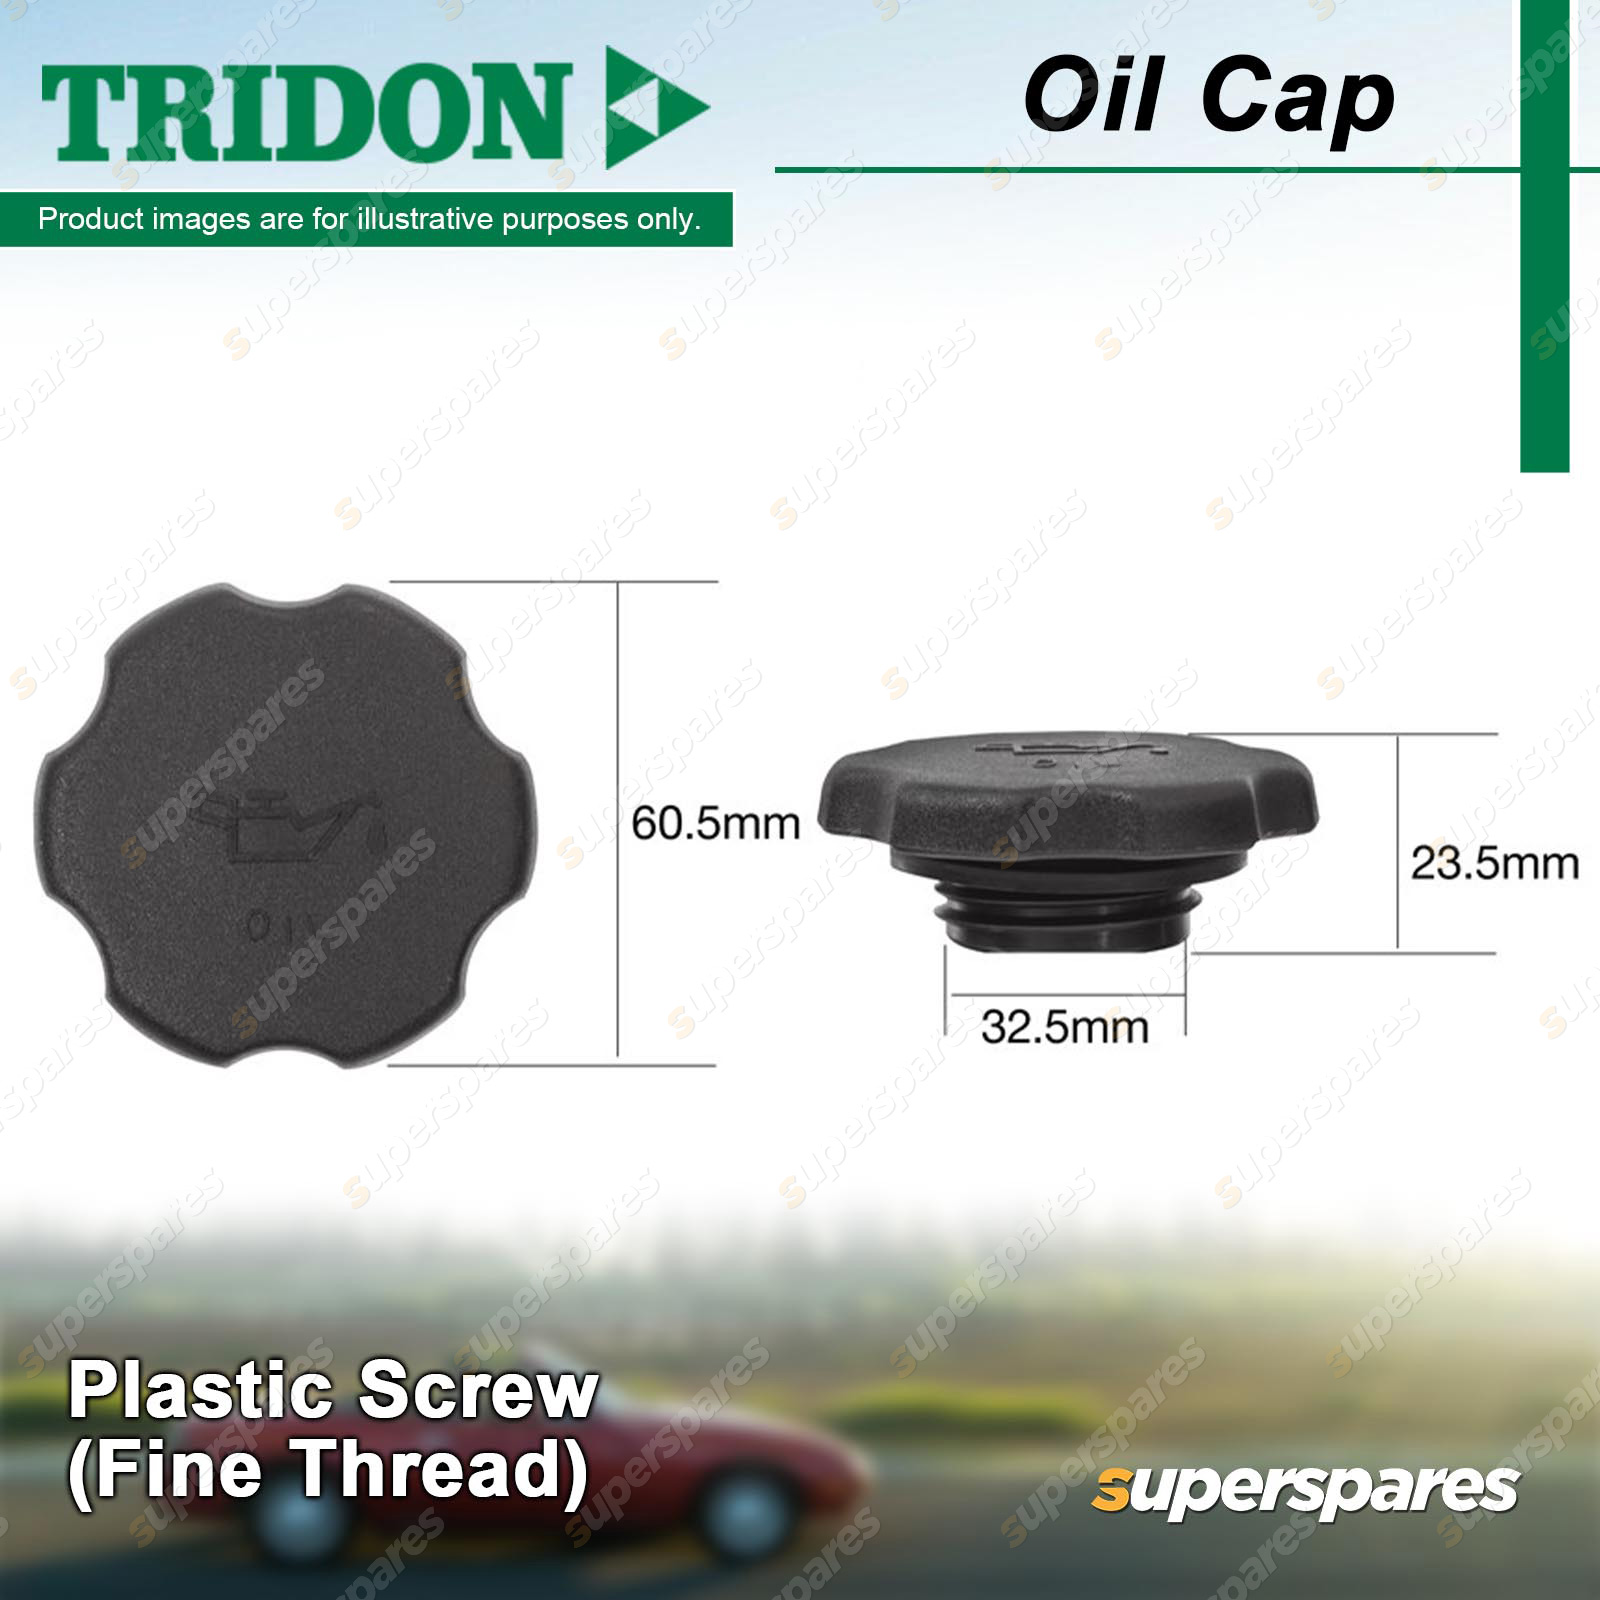 Tridon Oil Cap Plastic Screw 32.5mm for Mazda Atenza GG3S GY3W Tribute 2.0L  2.3